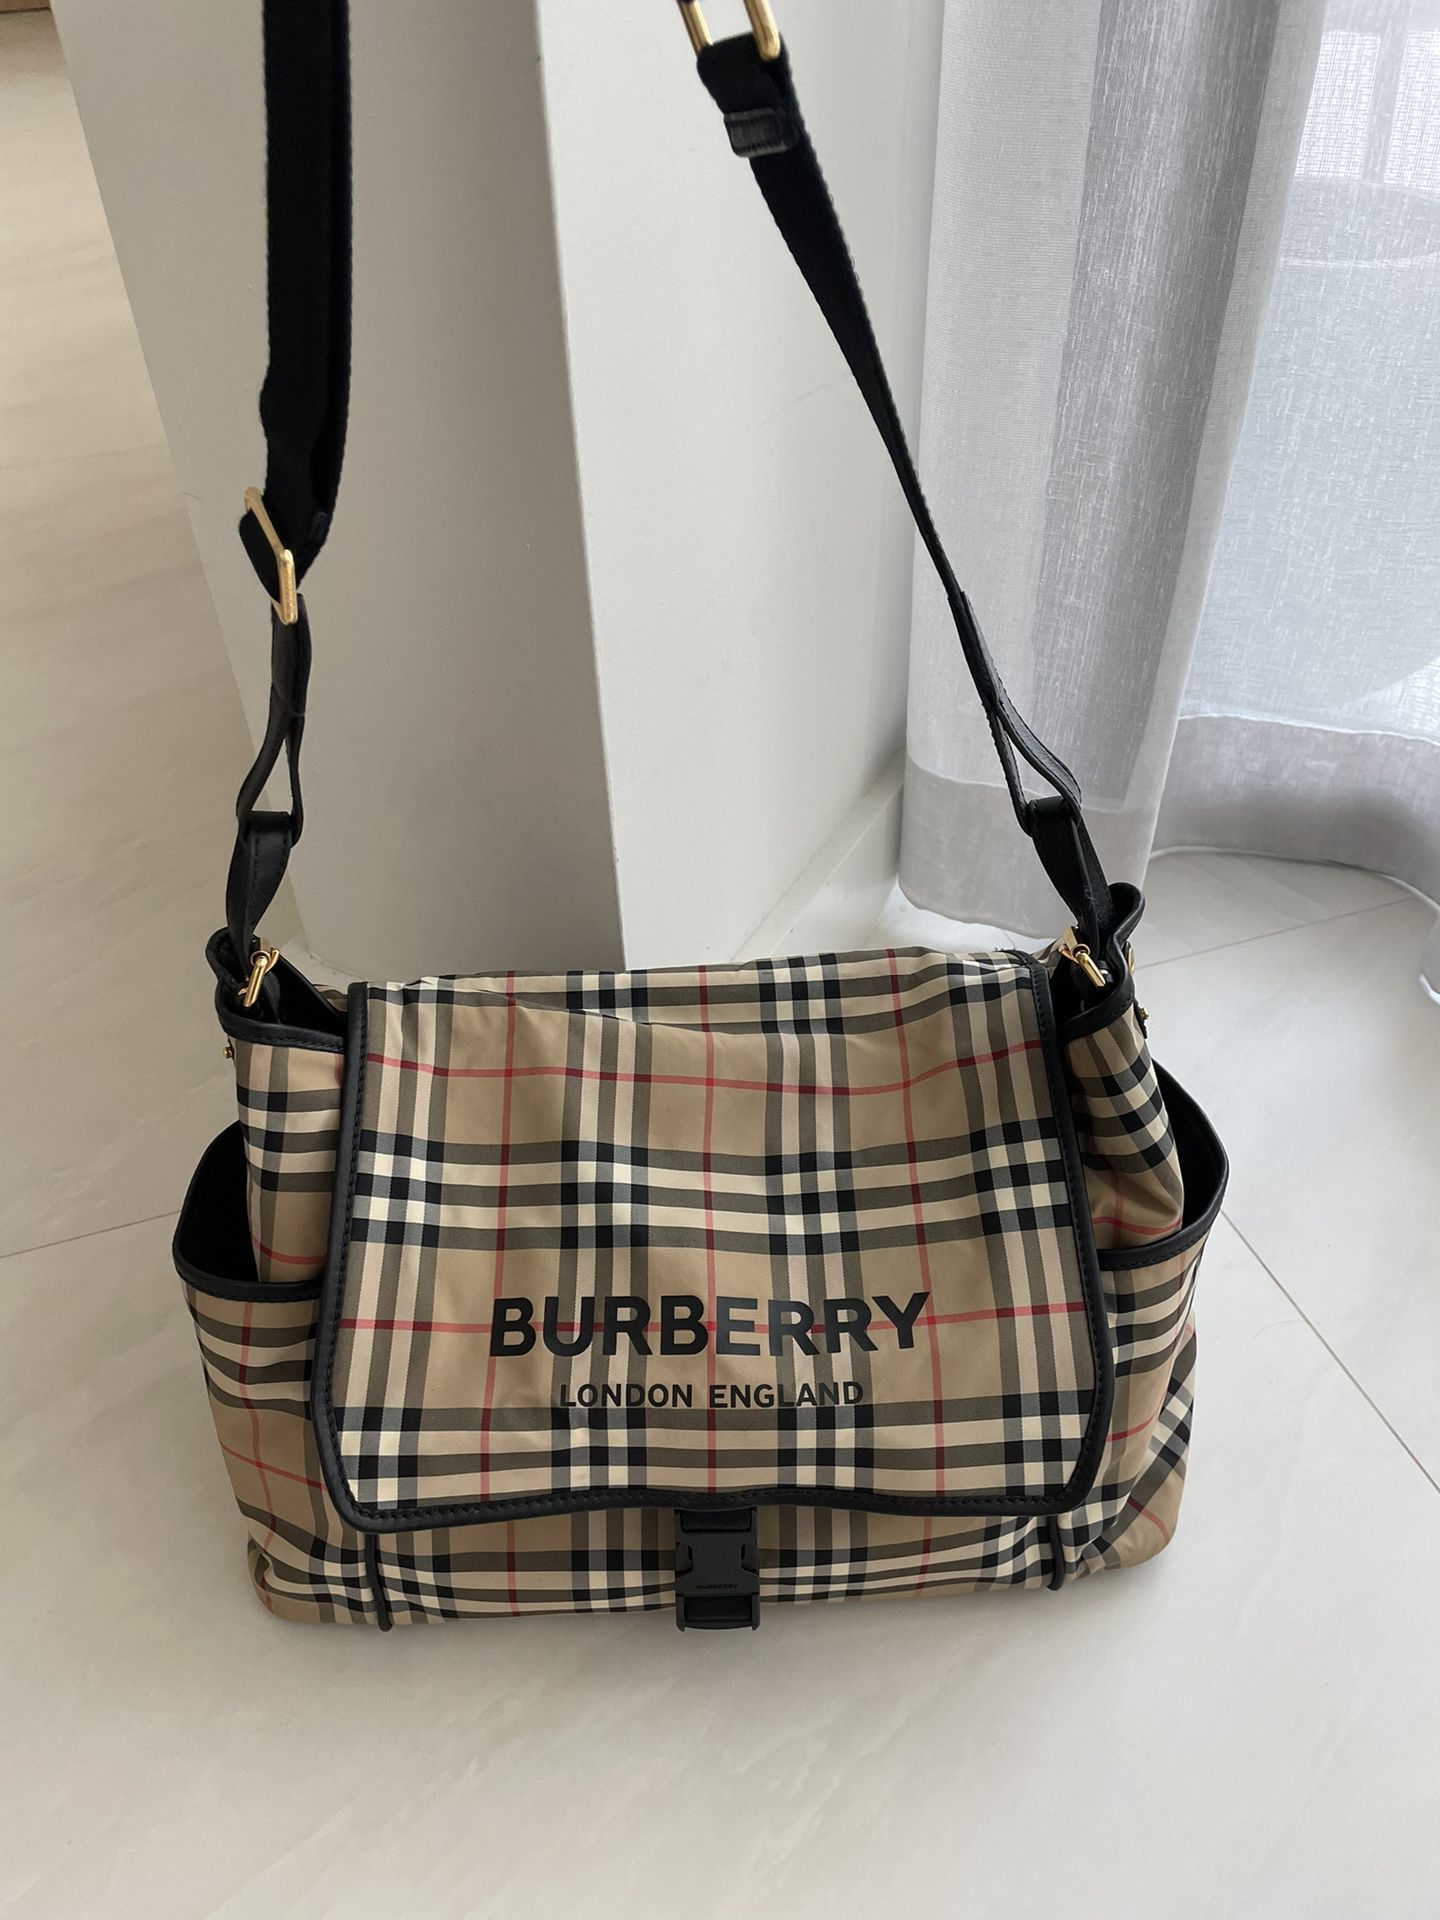 Burberry Baby Bag (Vintage Check Nylon Baby Changing Bag)